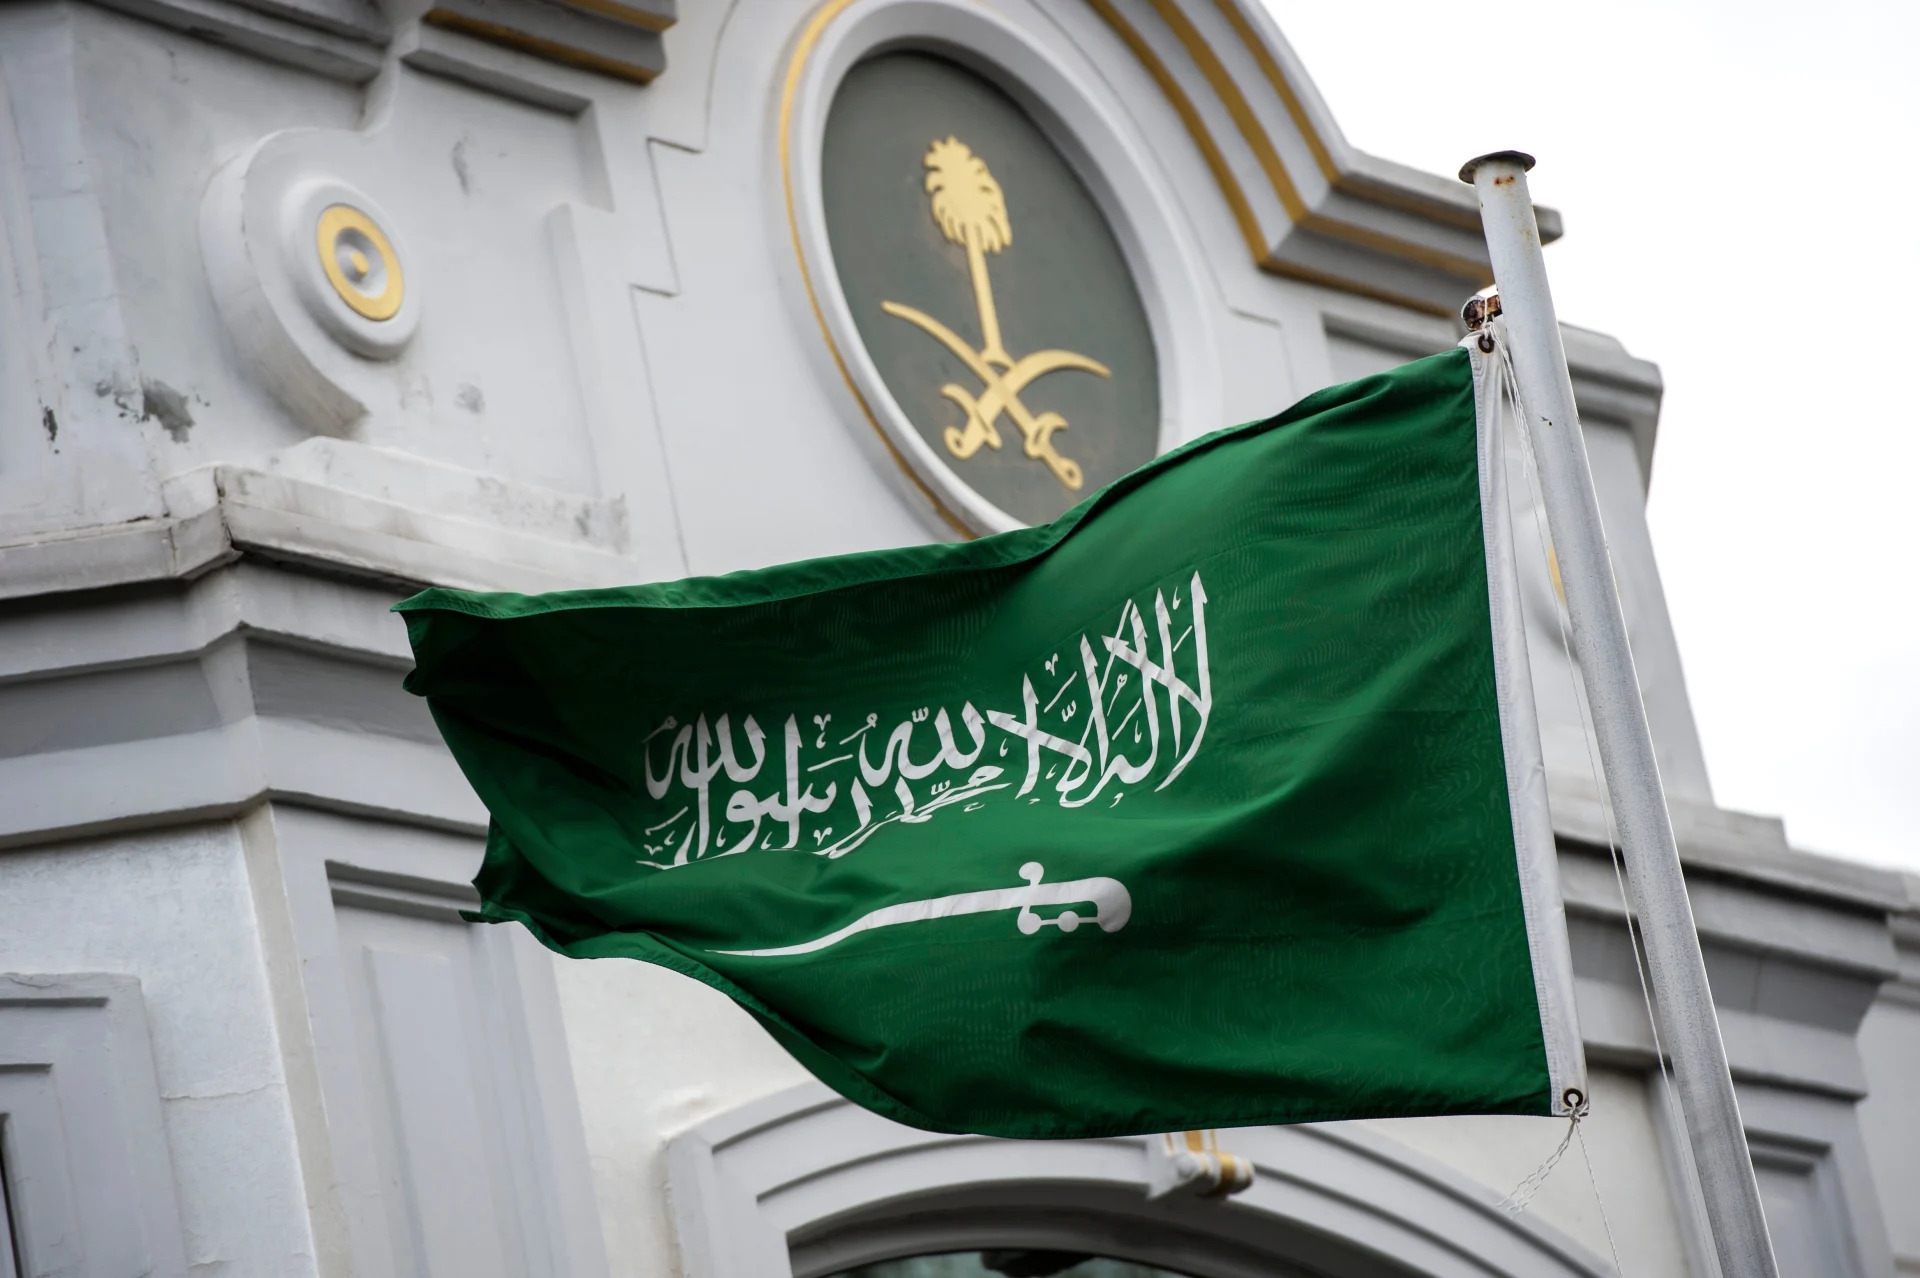 السفارة السعودية تؤكد أن اجتماع الخرطوم بغرض تبادل الأفكار